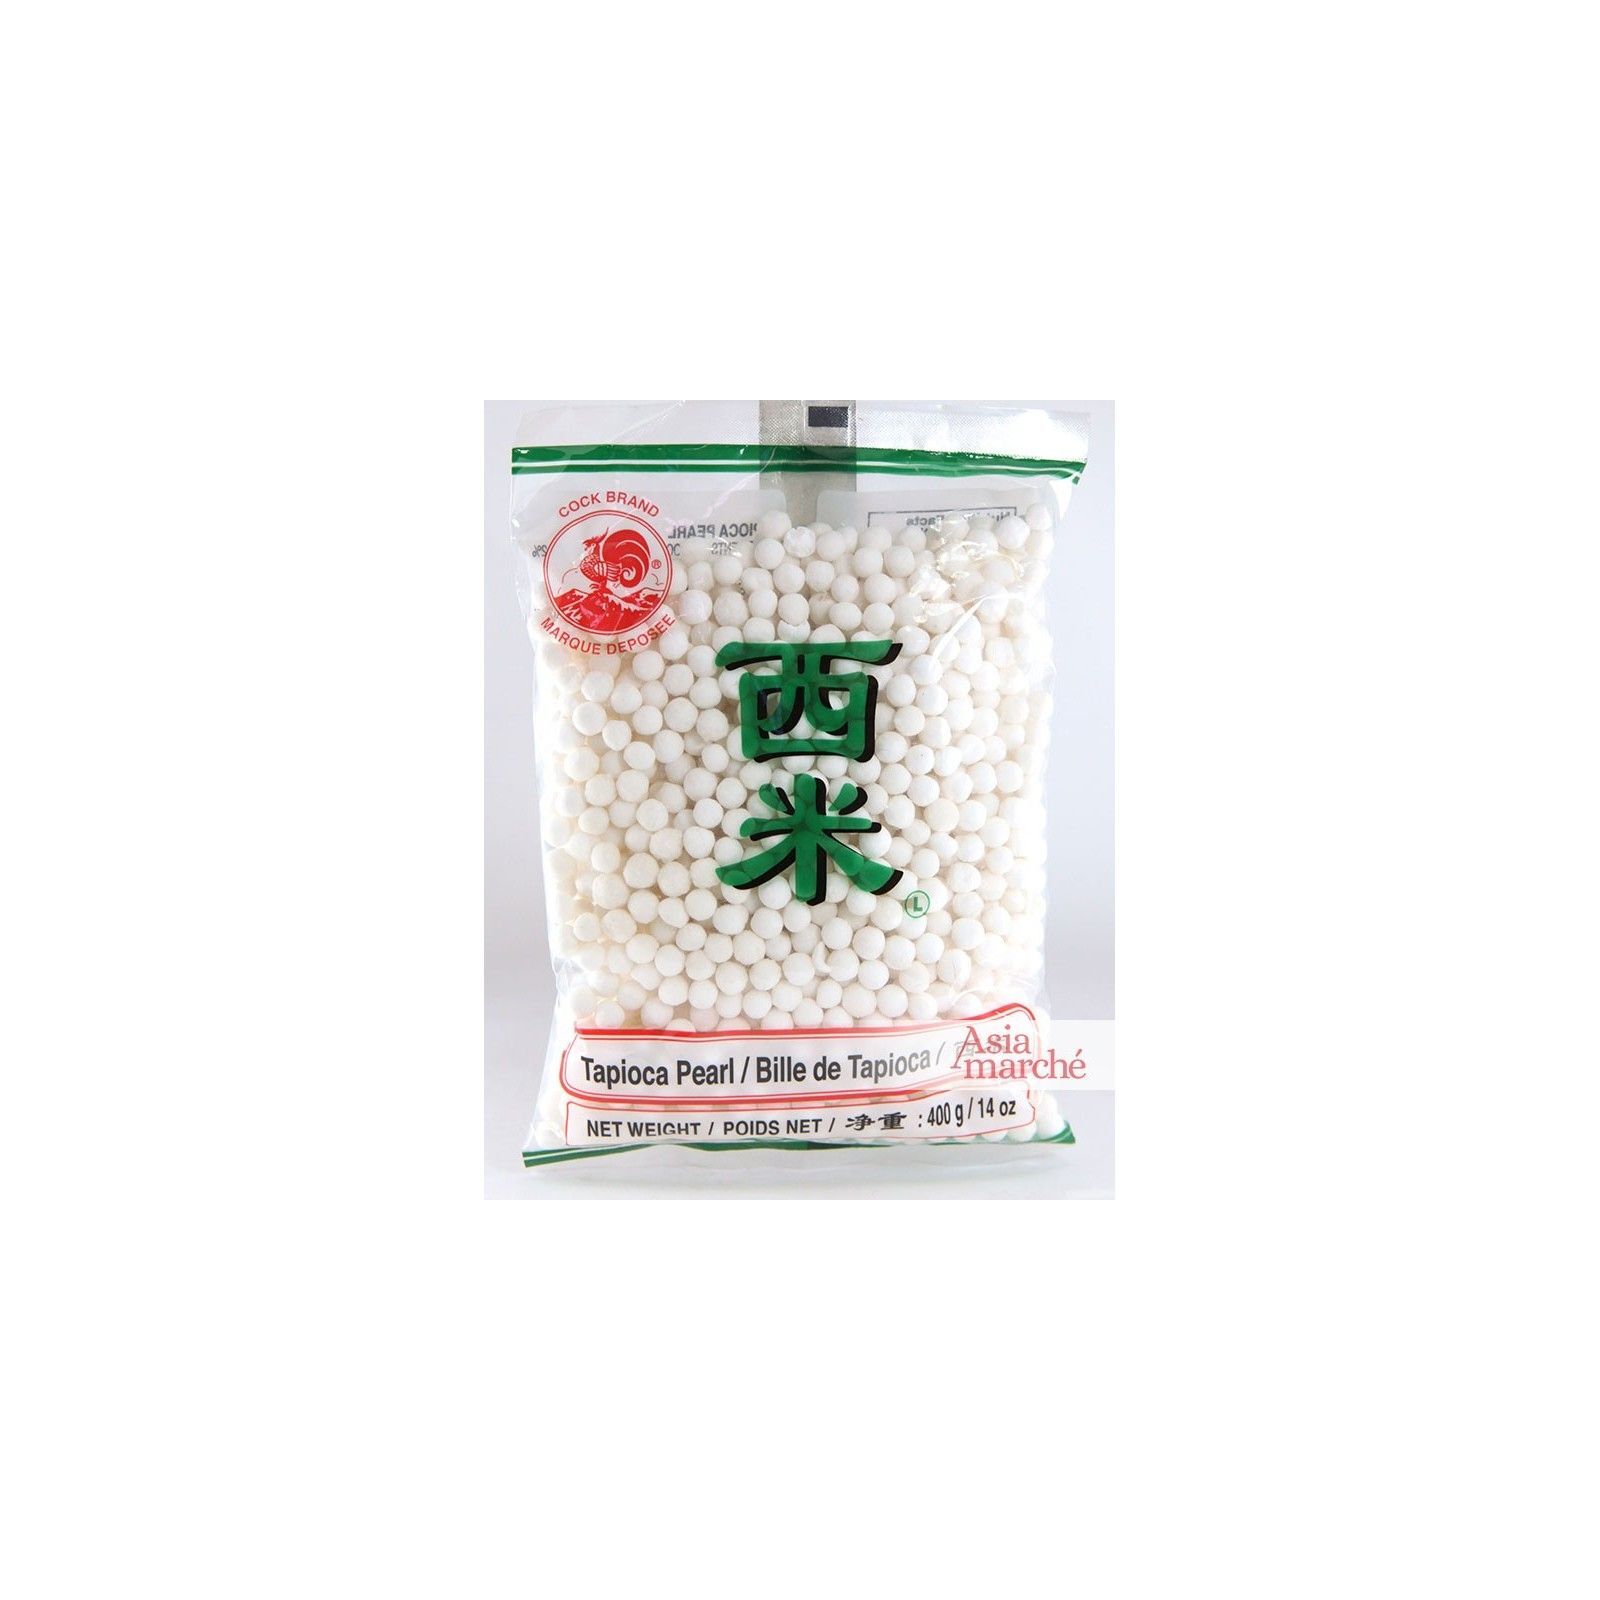 Asia Marché Grosses billes de Tapioca, Perles du Japon 400g